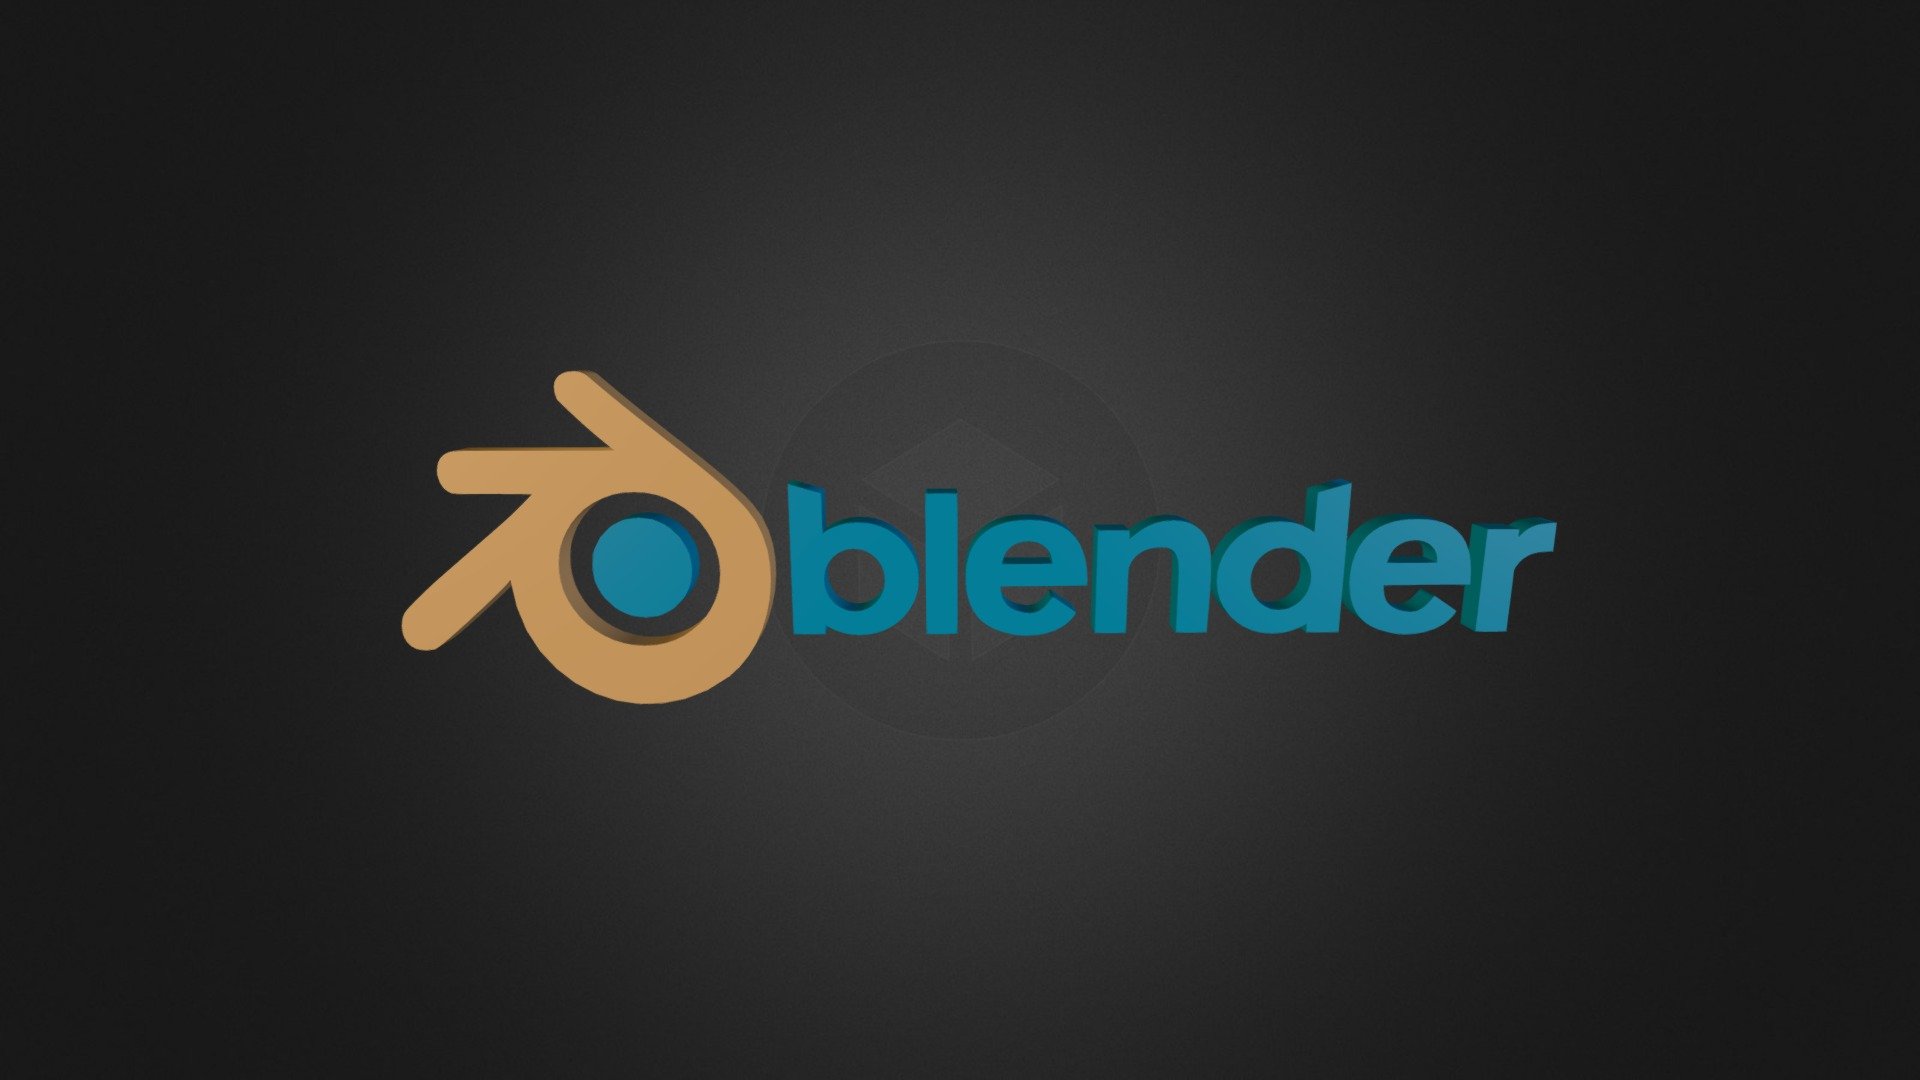 blender logo design